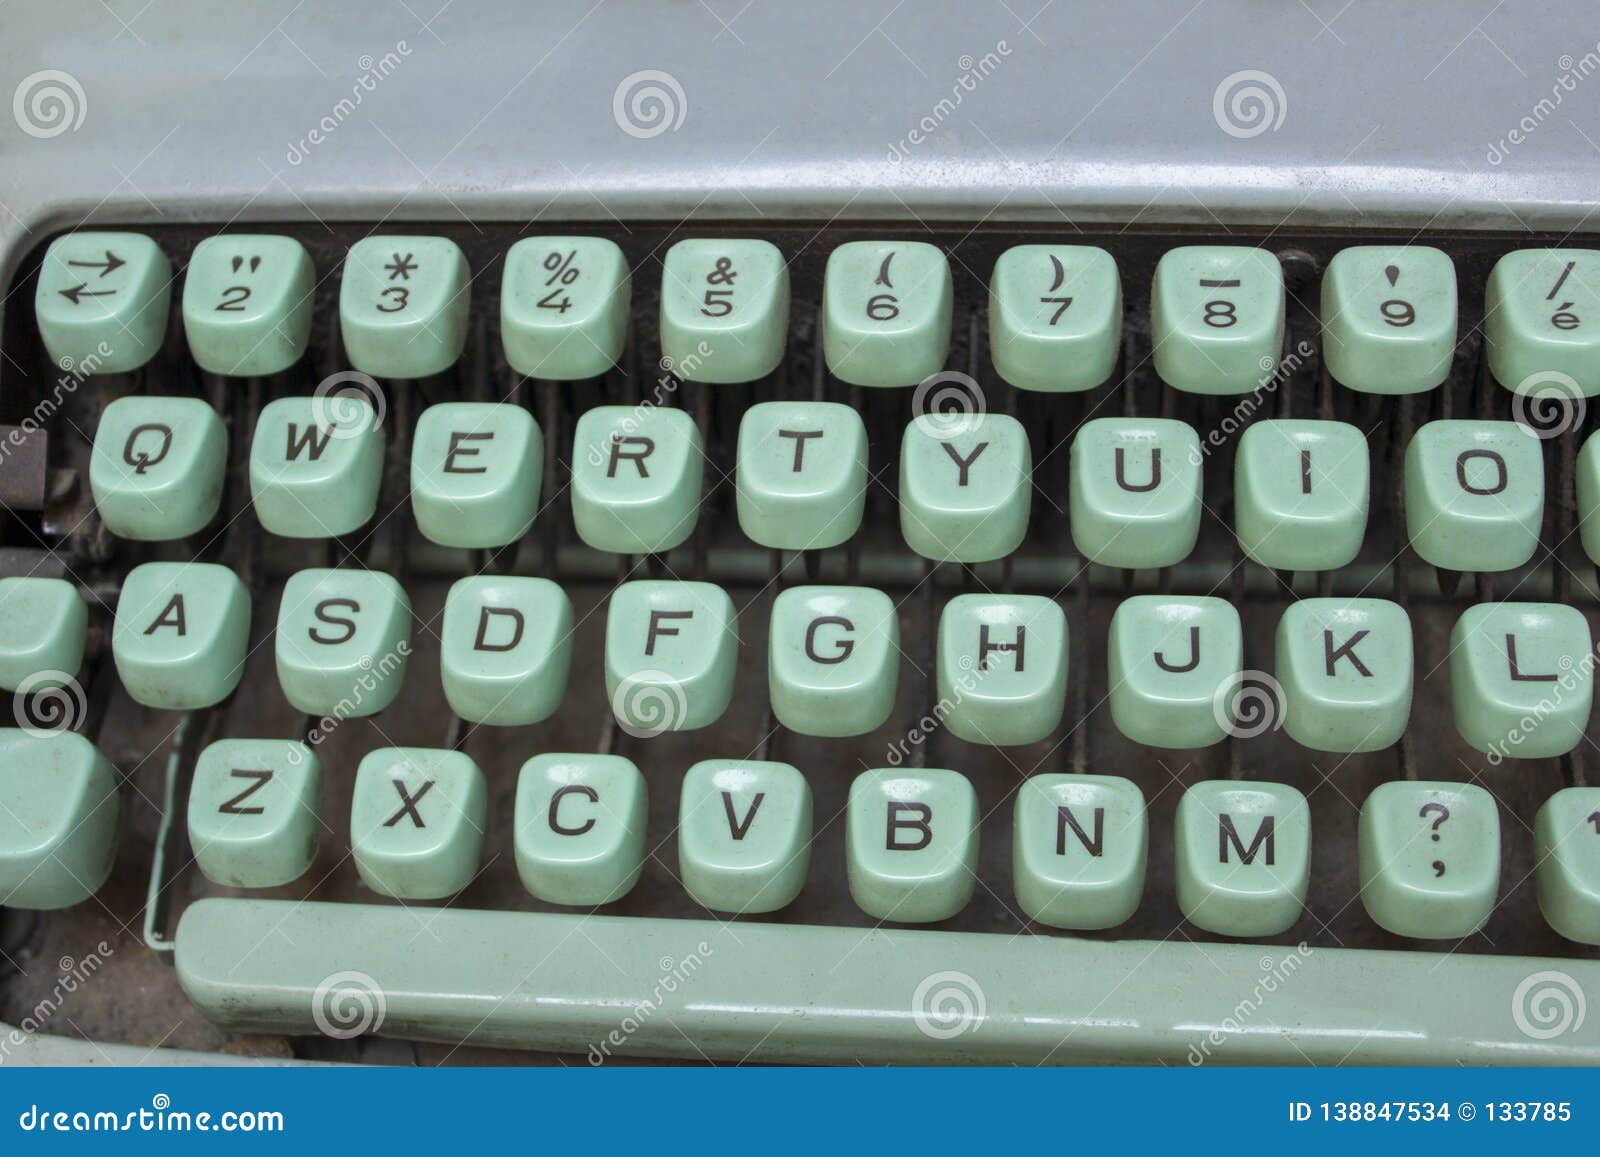 blue typewriter keyboard